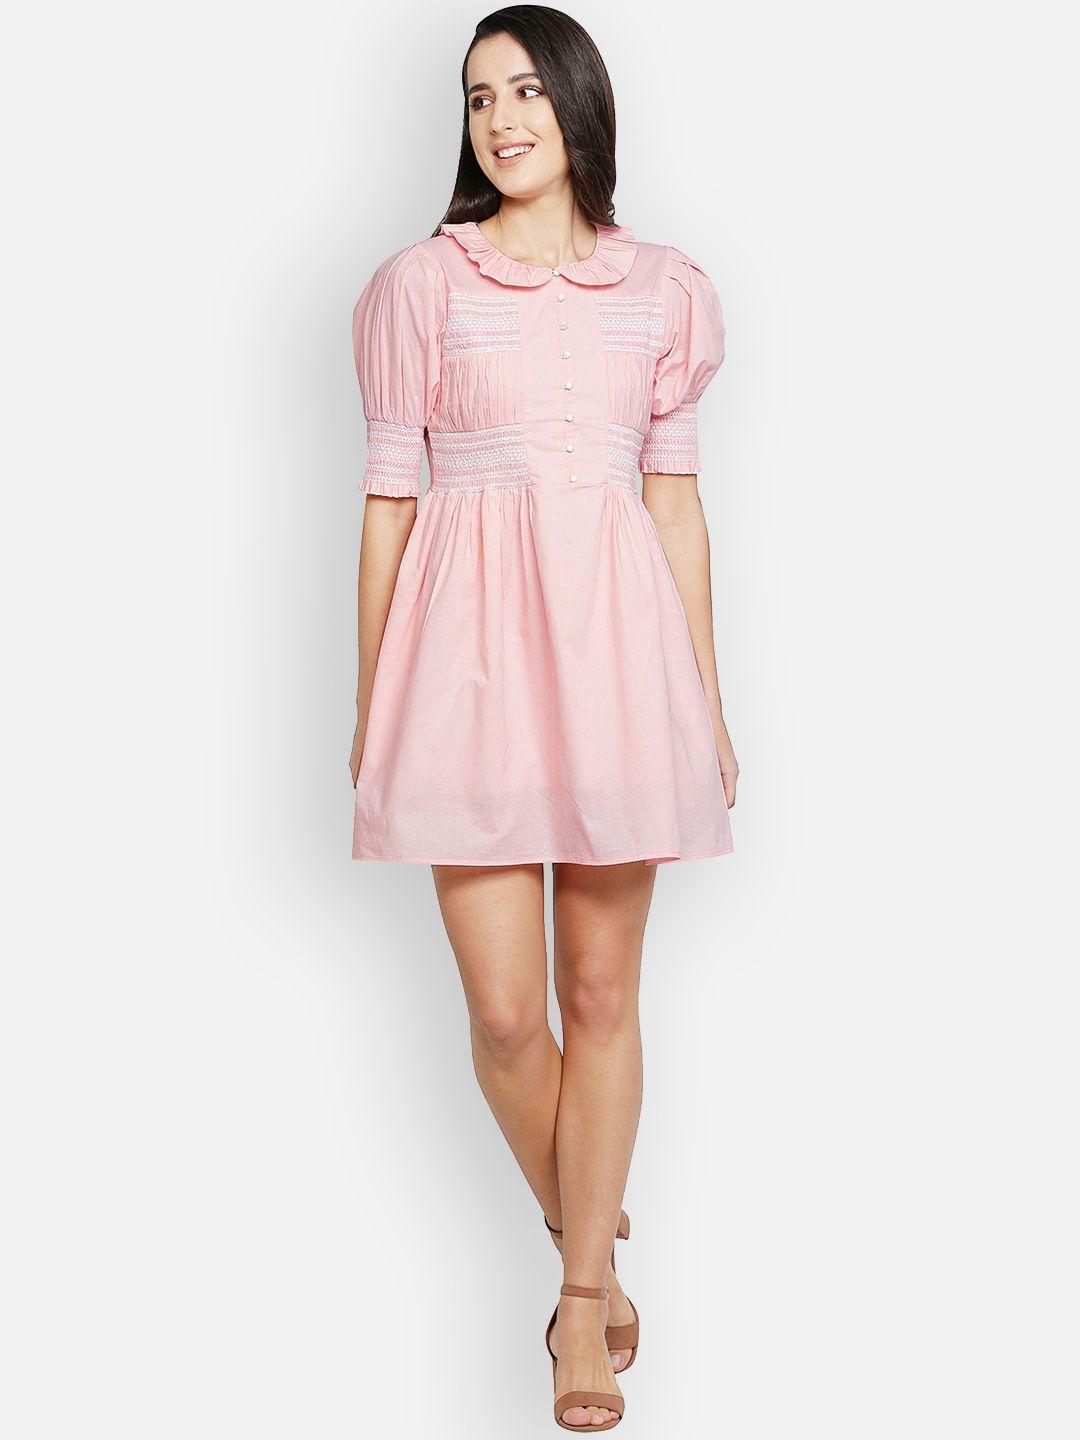 blanc9-pink-peter-pan-collar-cotton-smocking-dress